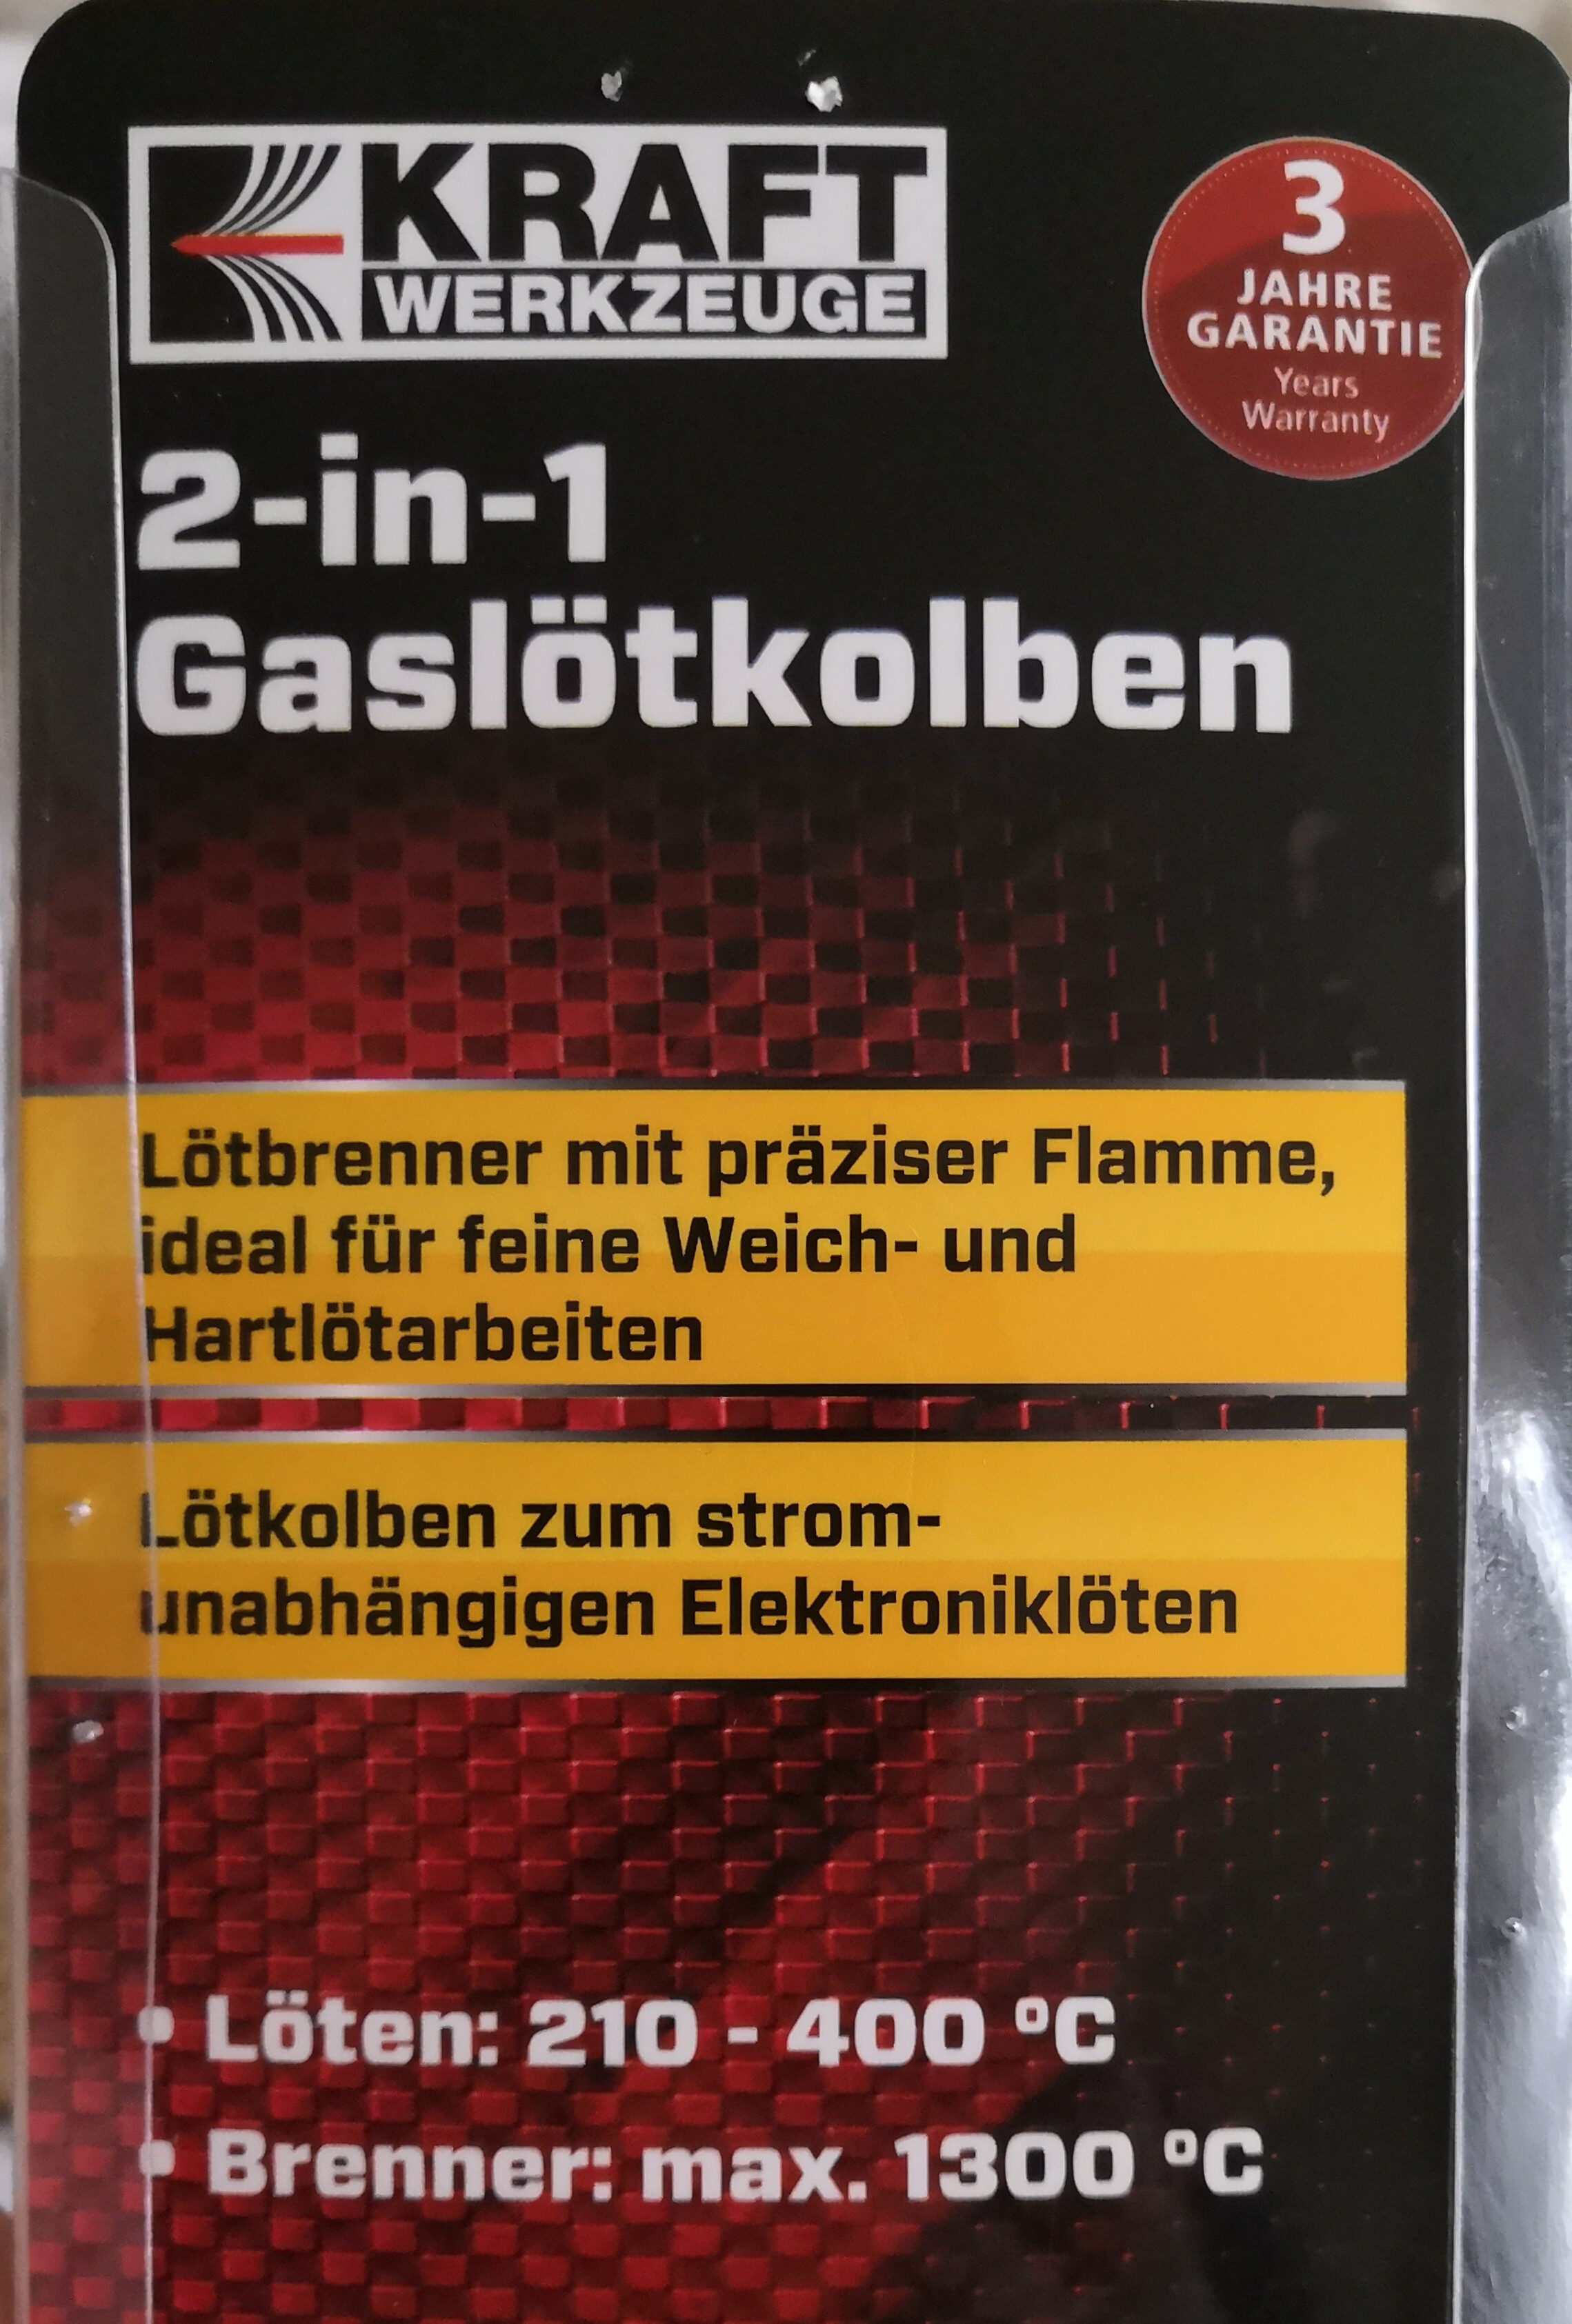 2-in-1 Gaslötkolben - Ingredients - de